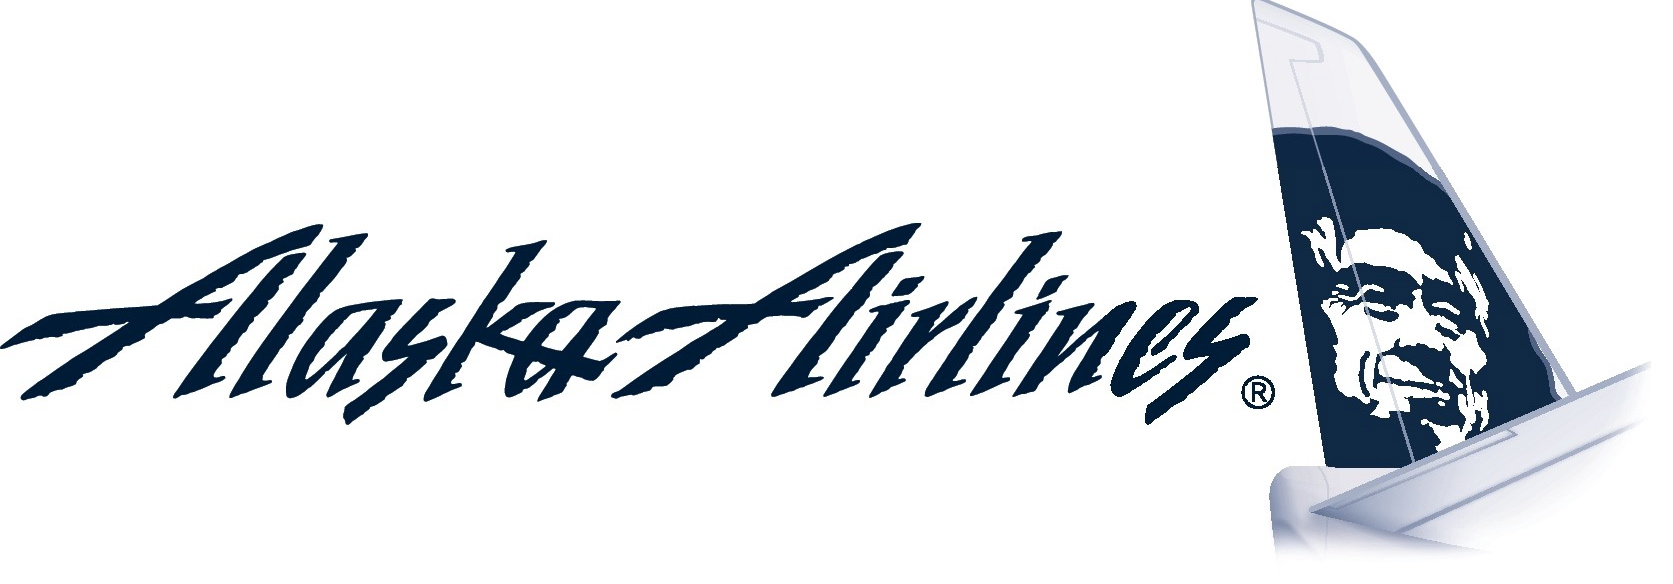 Alaska Airlines.jpg